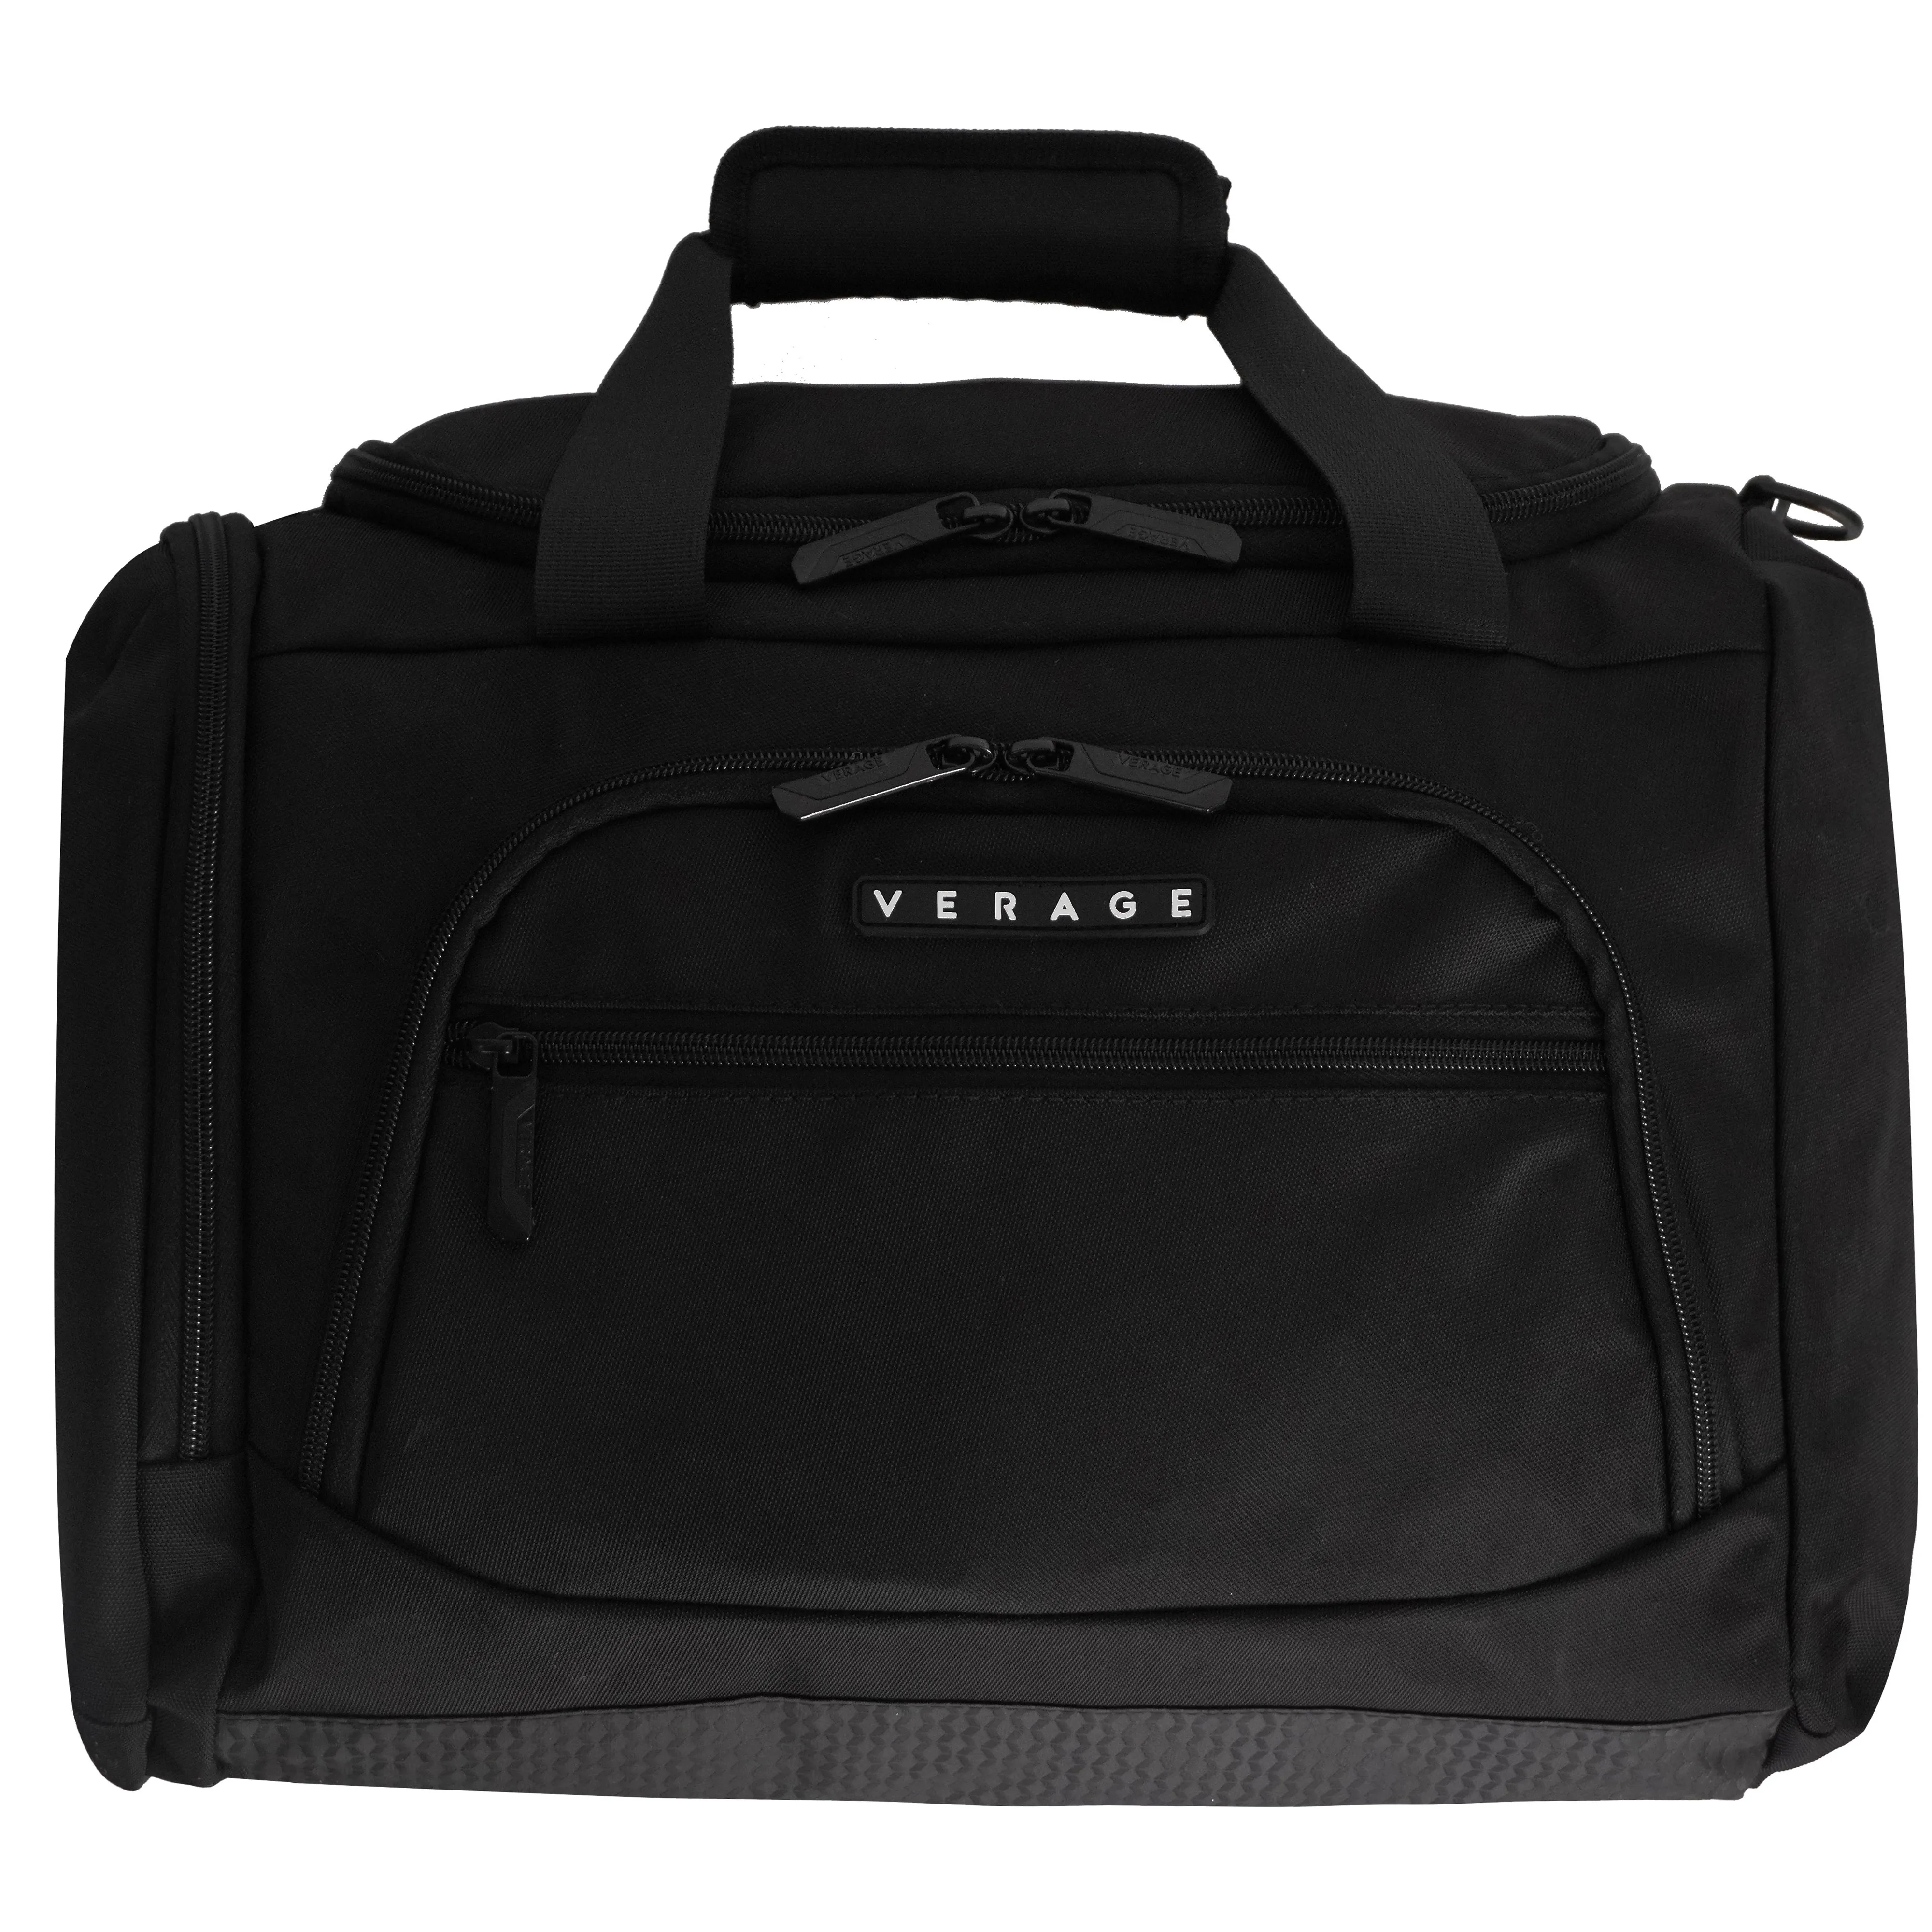 VERAGE Waterproof Weekender Casual Gym Bag Handbag Backpack Women Men Sport Travel Bags 16 Inches Folded